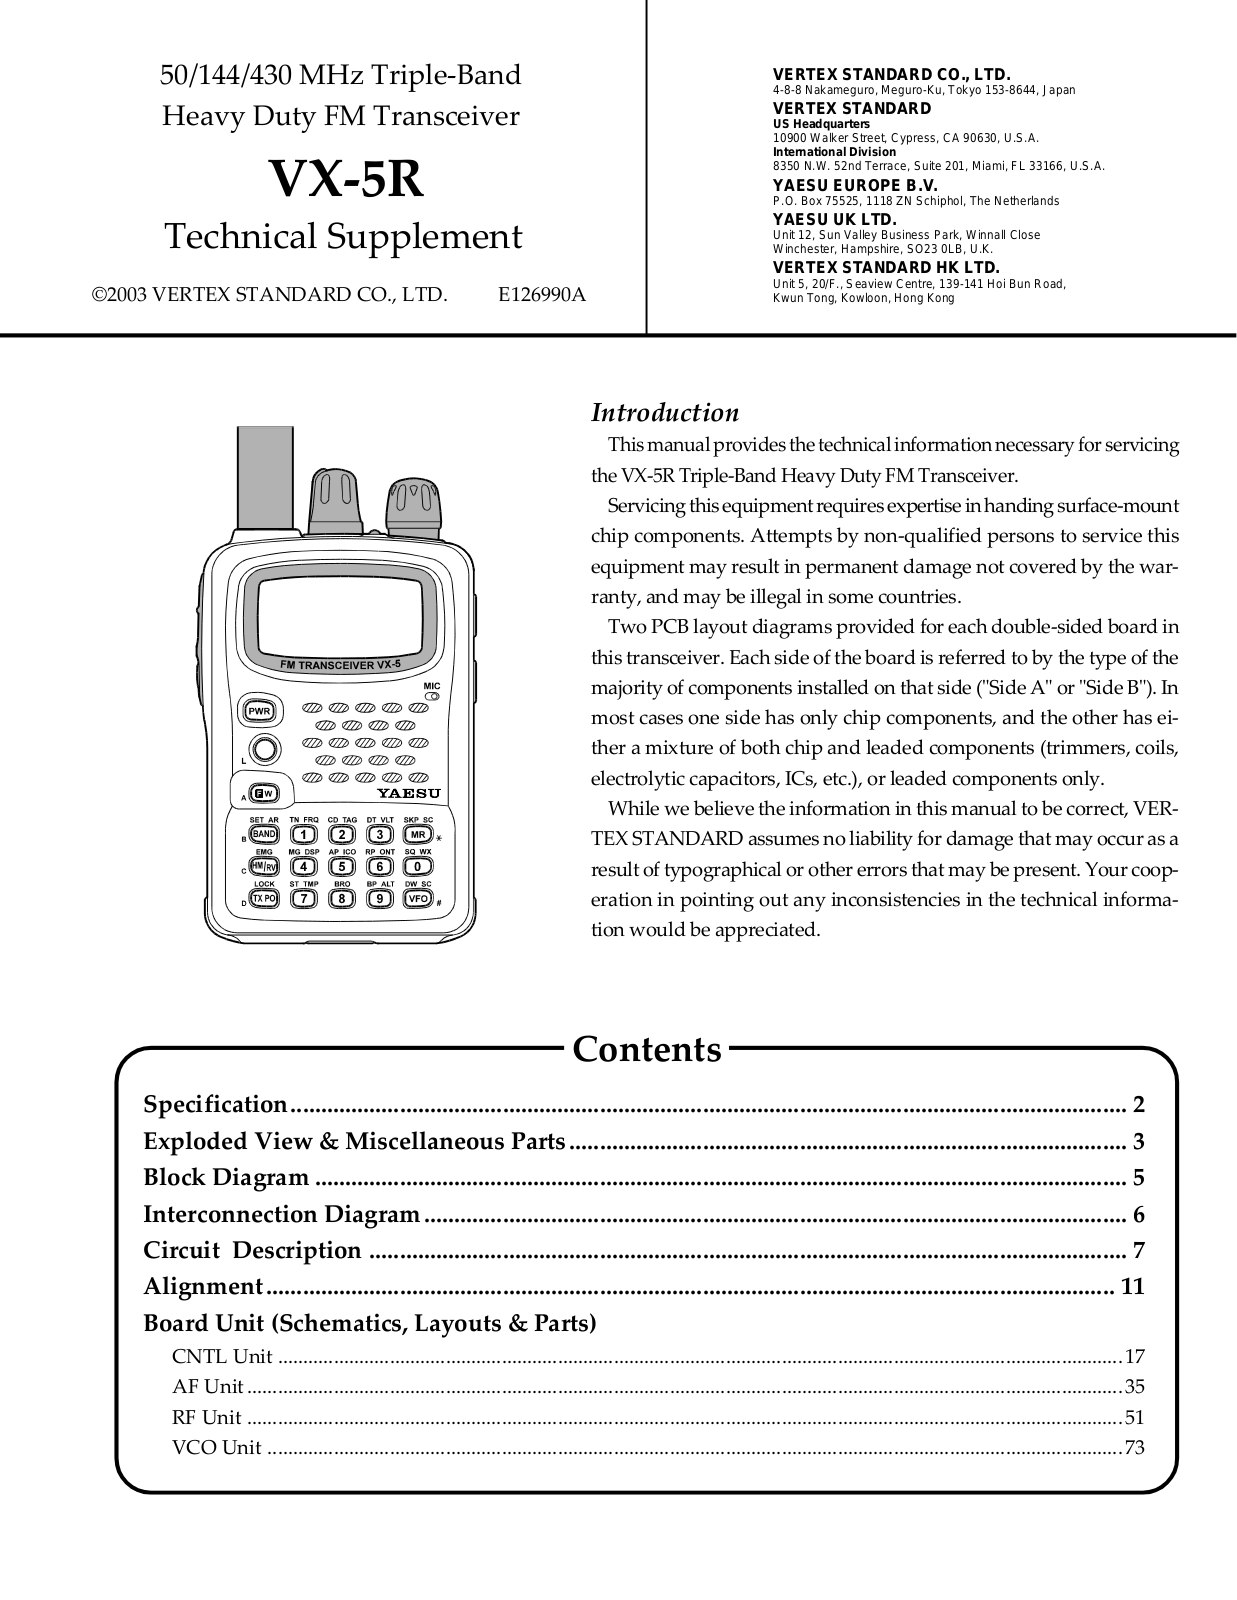 Yaesu VX-5R Service Manual